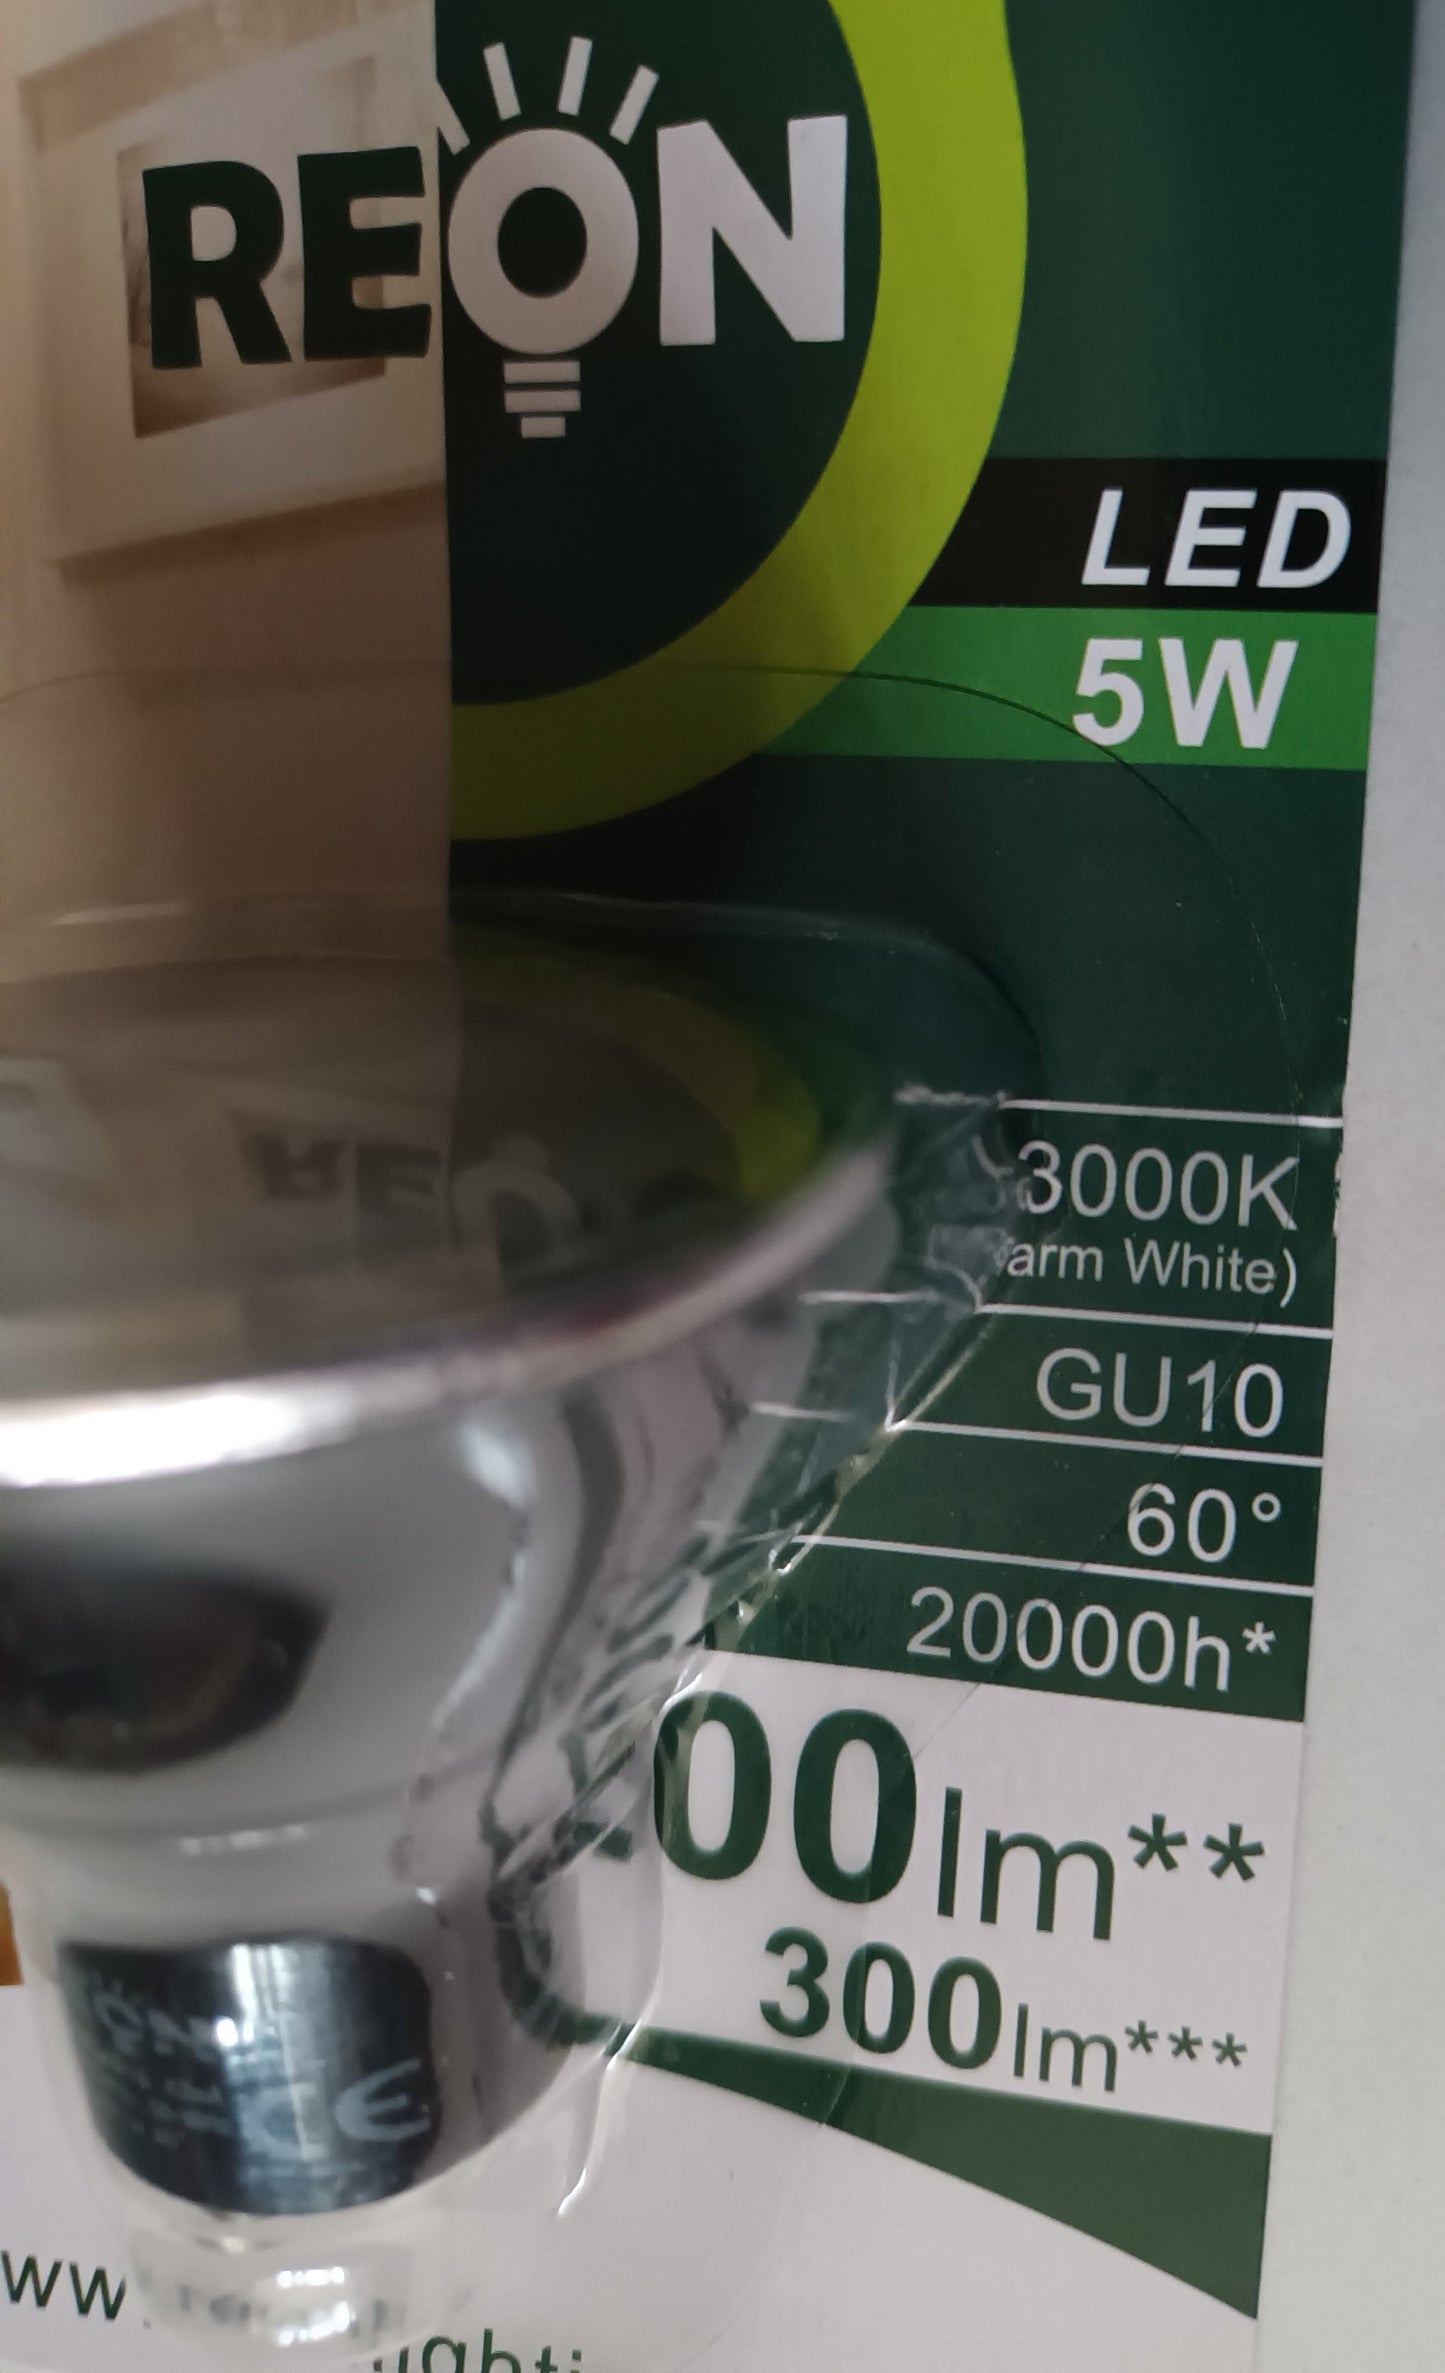 Gu10 LED 5W Warm White / 3000k. By Reon